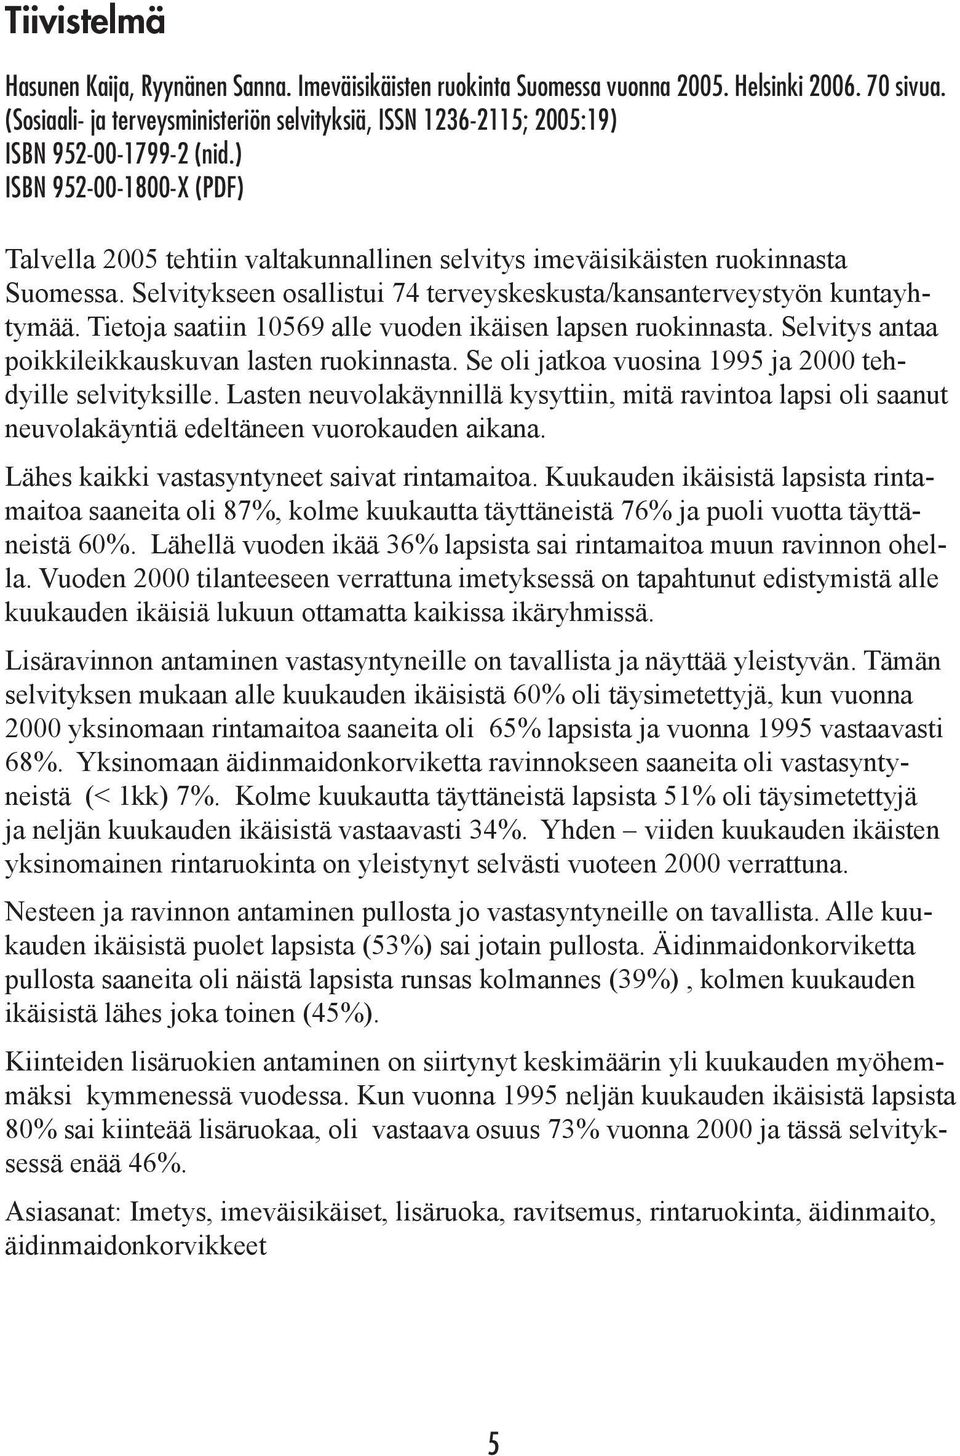 ) ISBN 952-00-1800-X (PDF) Talvella 2005 tehtiin valtakunnallinen selvitys imeväisikäisten ruokinnasta Suomessa. Selvitykseen osallistui 74 terveyskeskusta/kansanterveystyön kuntayhtymää.